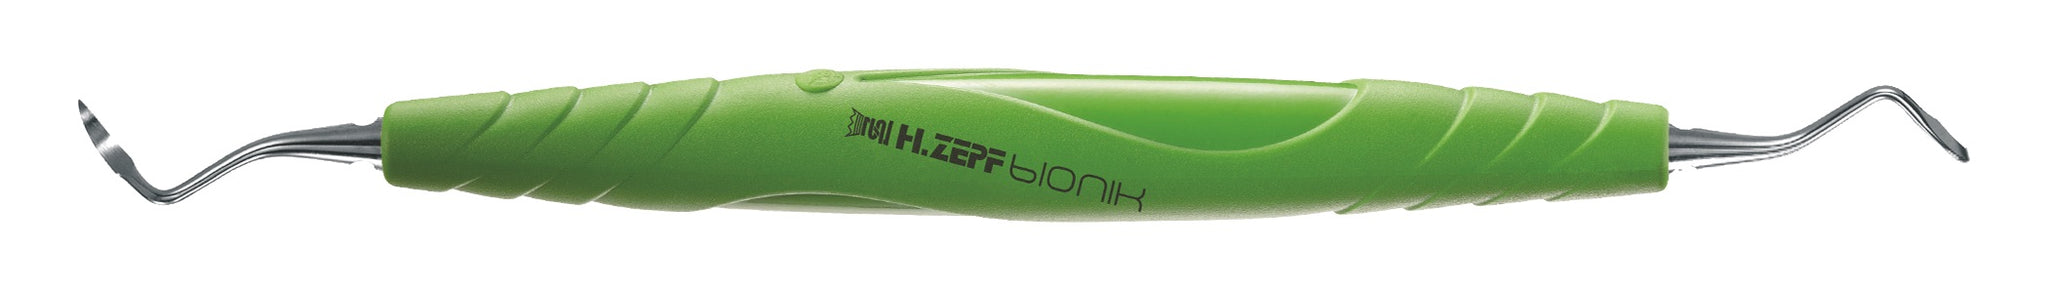 Scaler BIONIK ZEPF Mini-Kaplan #CI 2/3